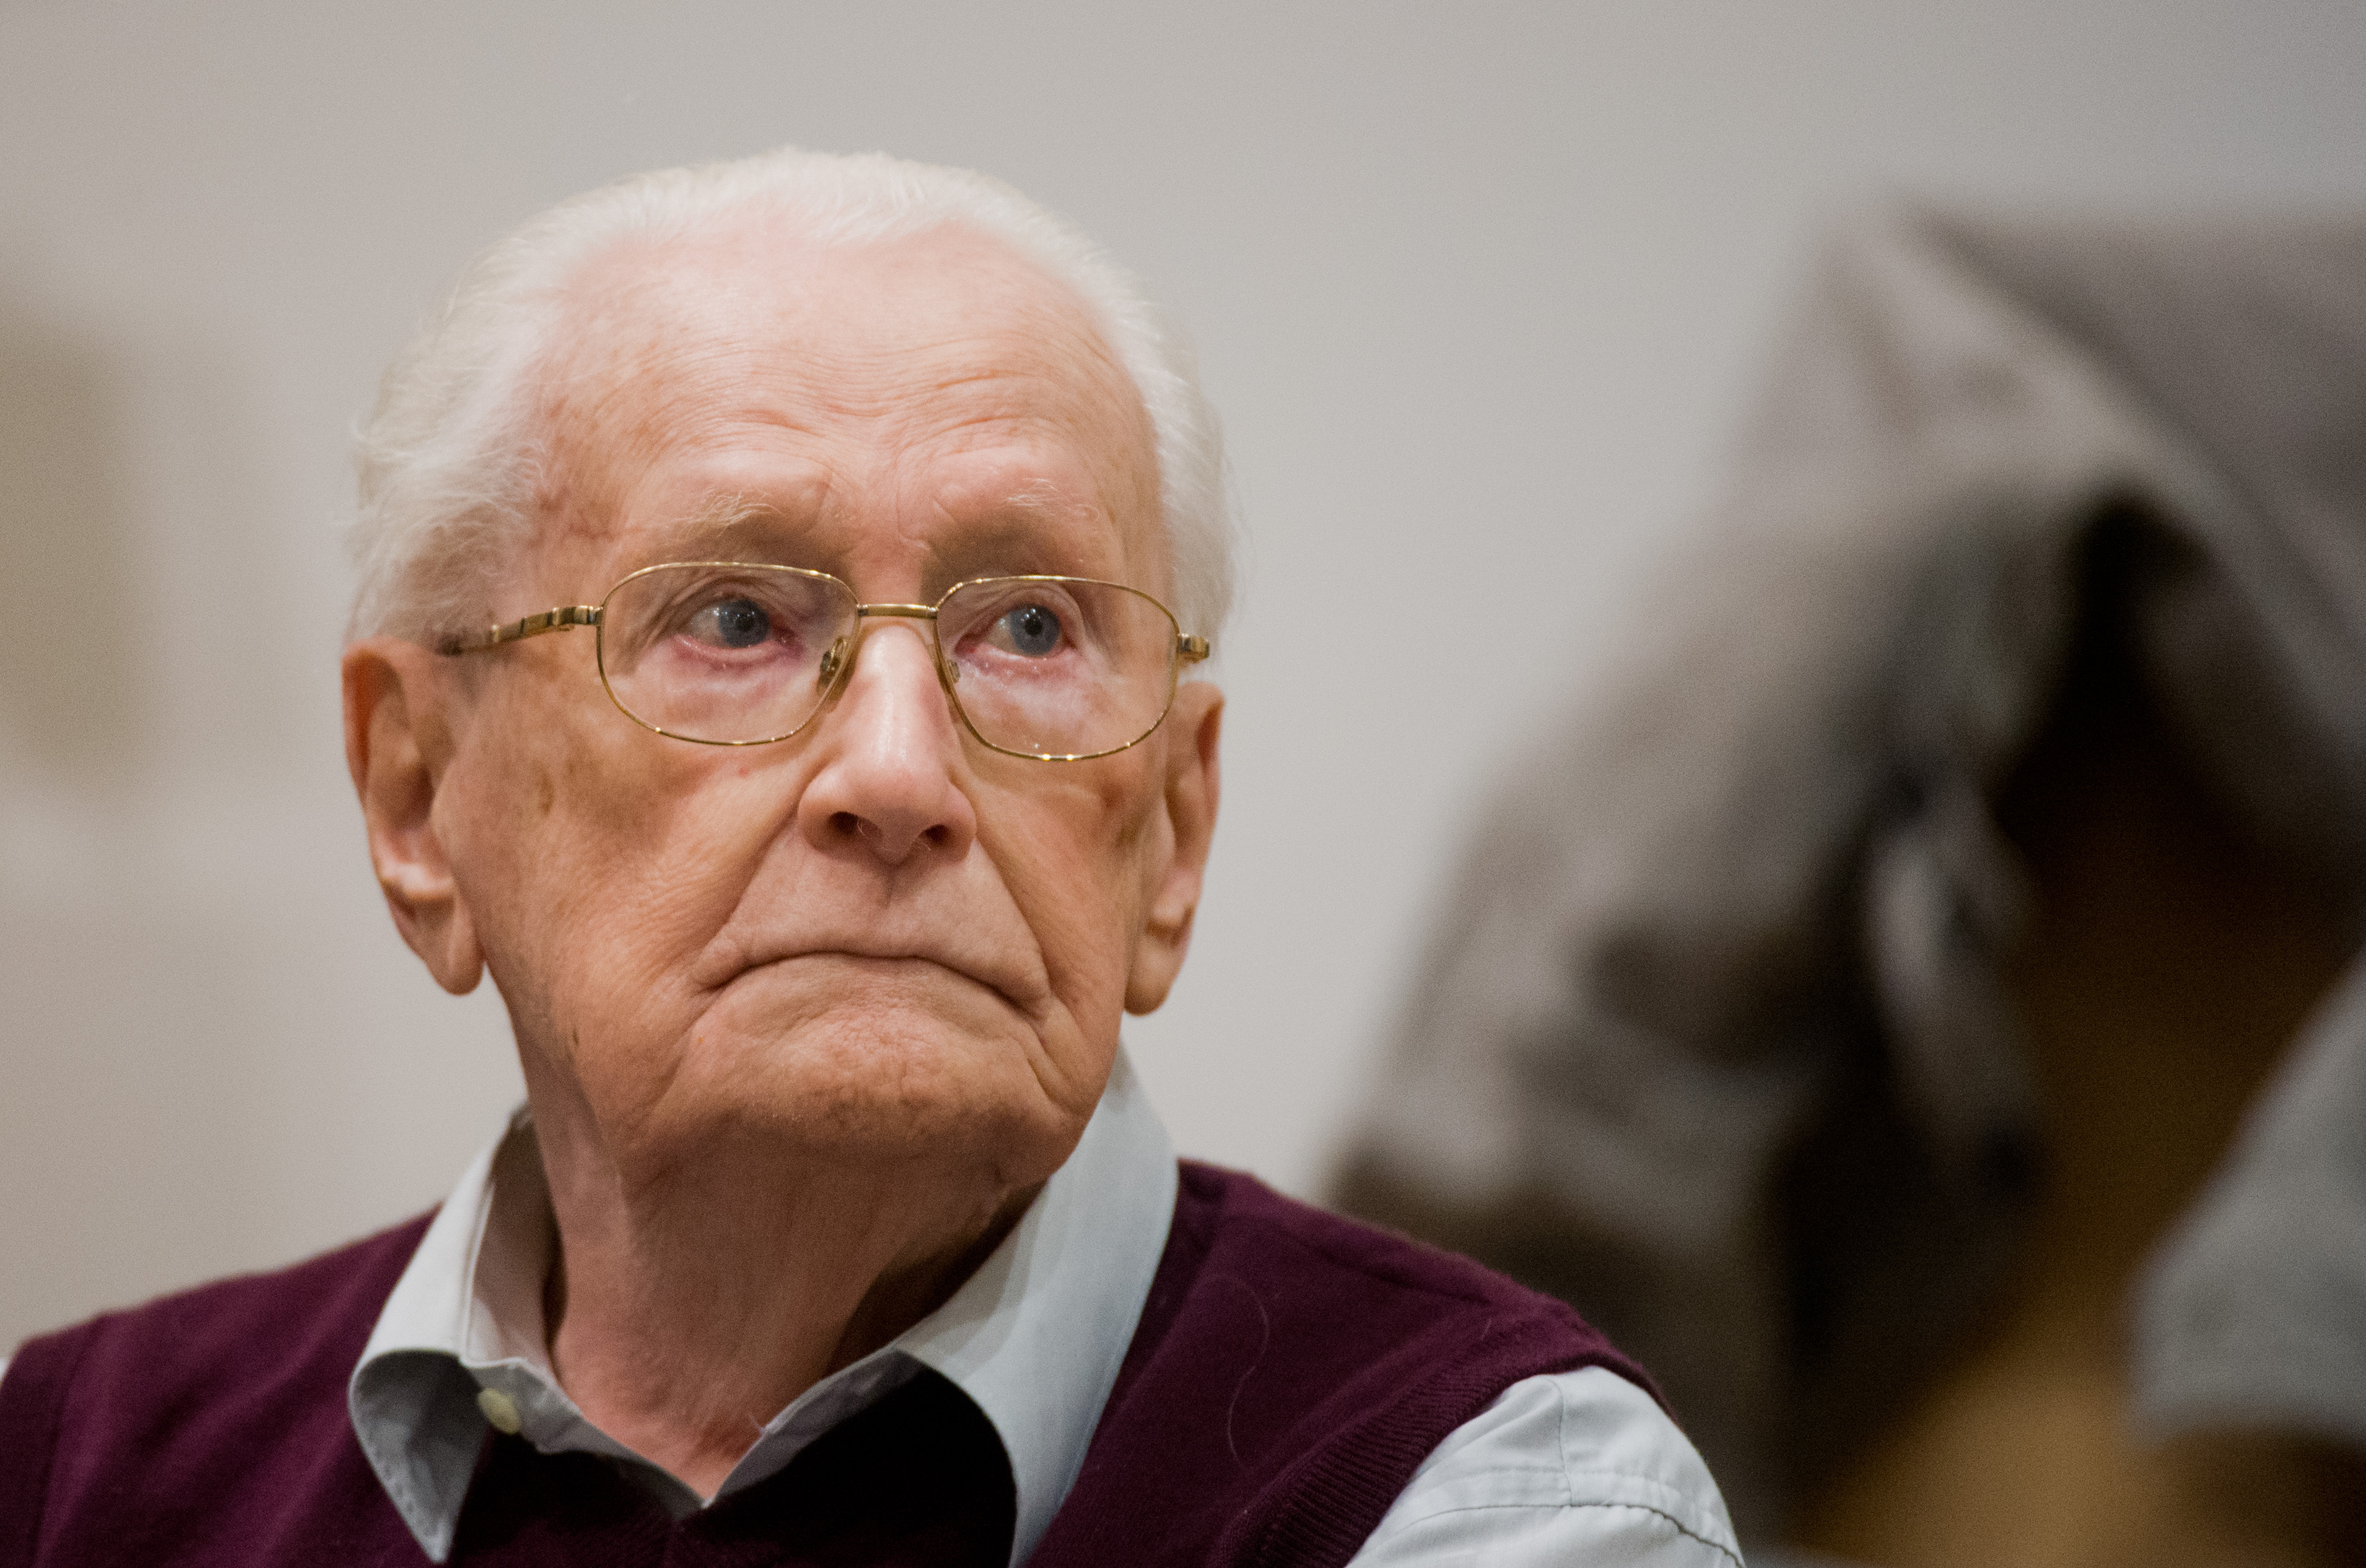 A börtönbevonulás előtt meghalt a 96 éves auschwitzi lágerőr